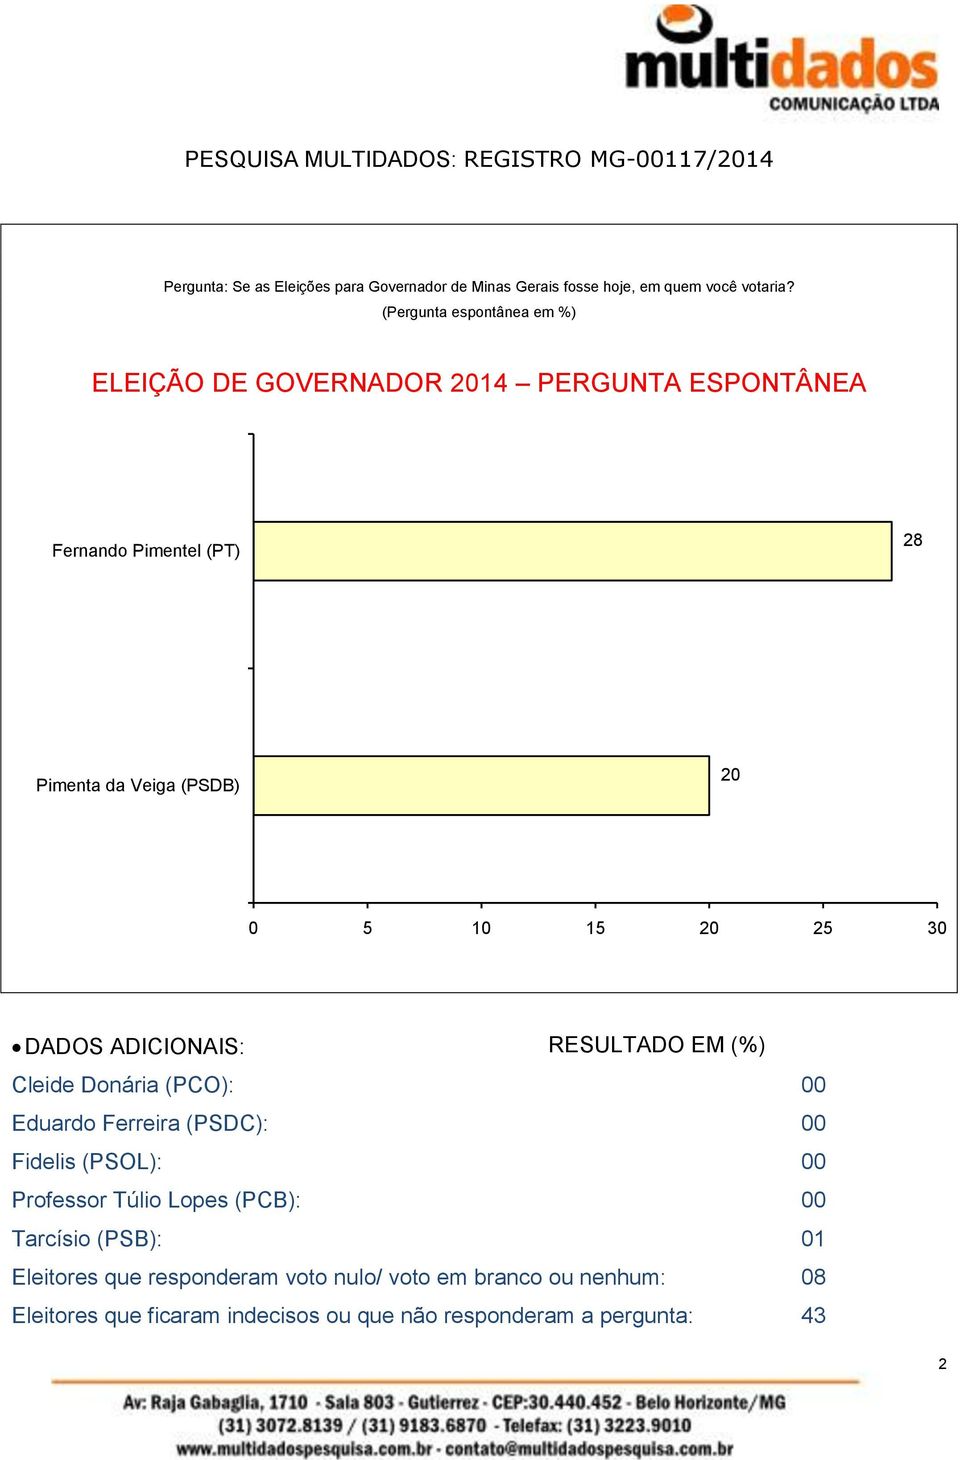 30 DADOS ADICIONAIS: RESULTADO EM (%) Cleide Donária (PCO): 00 Eduardo Ferreira (PSDC): 00 Fidelis (PSOL): 00 Professor Túlio Lopes (PCB): 00